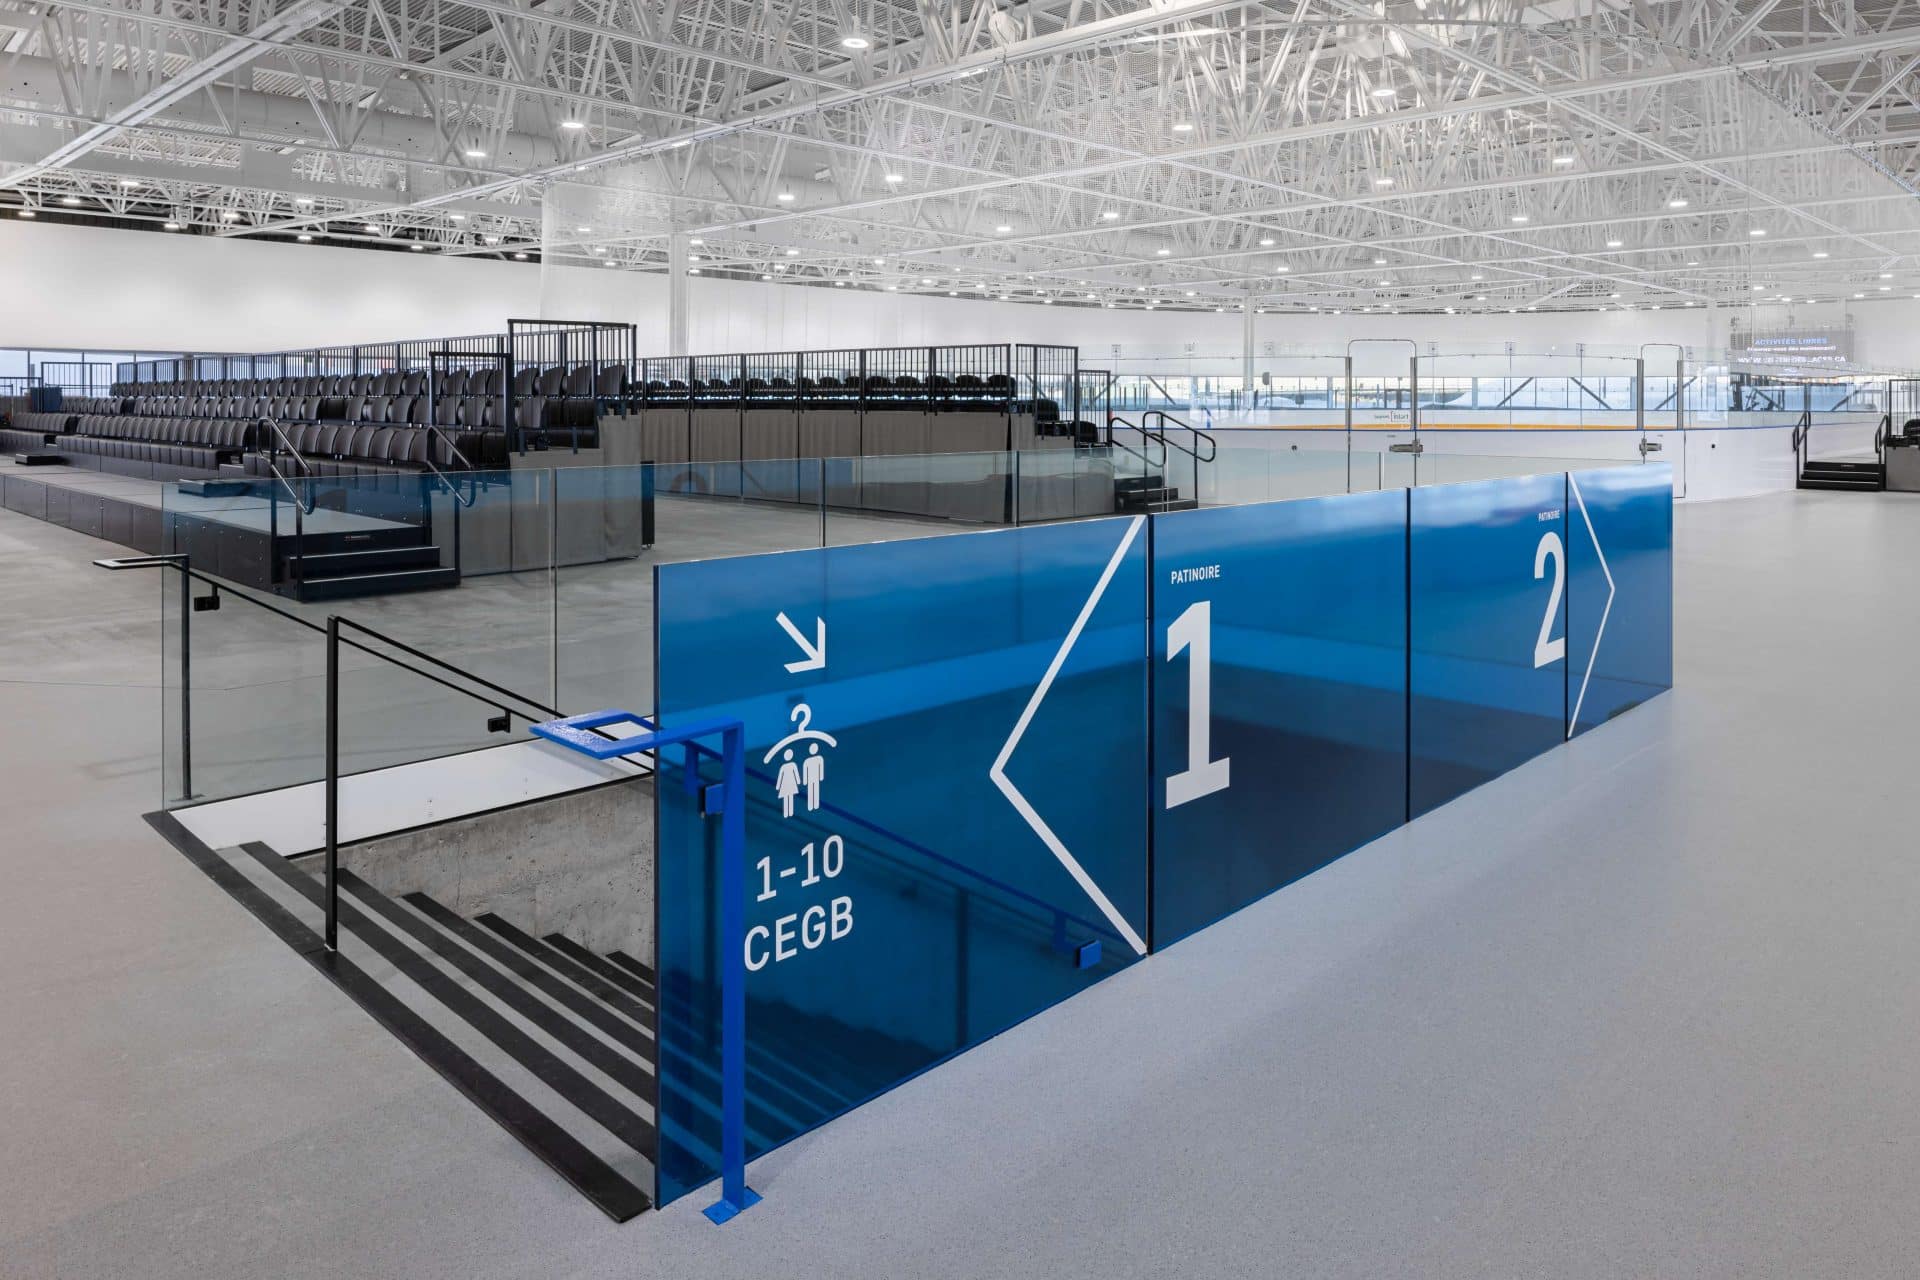 Centre-de-glaces-Quebec-Branding-Lemay-Architecture-Design-0272